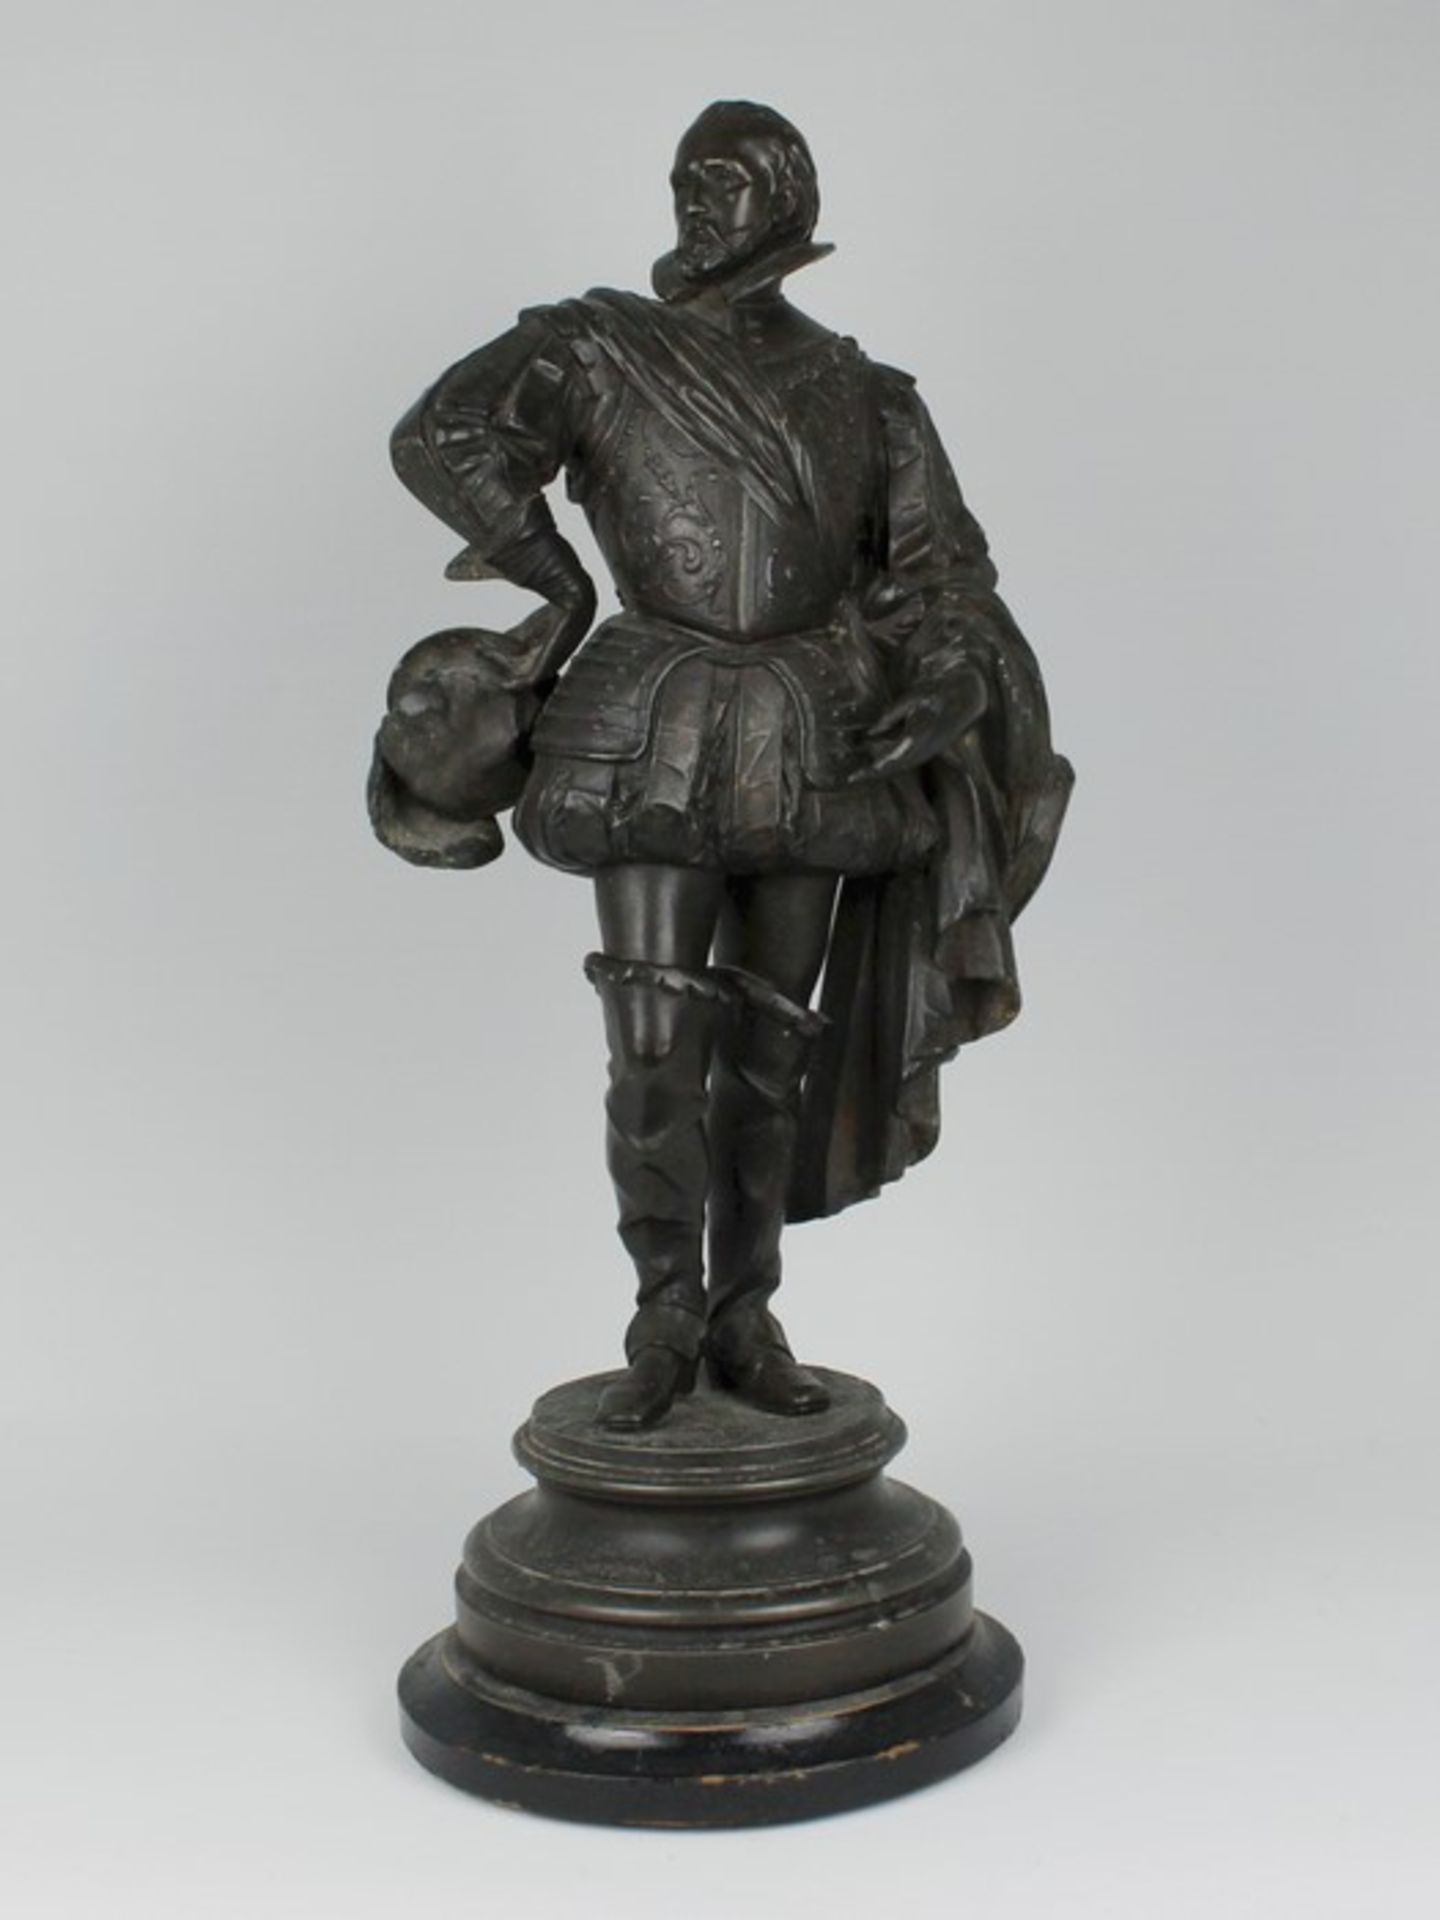 Figur1.H. 20.Jh., Metallguss, schwarz patiniert, vollplastische Figur eines Mannes in barocker